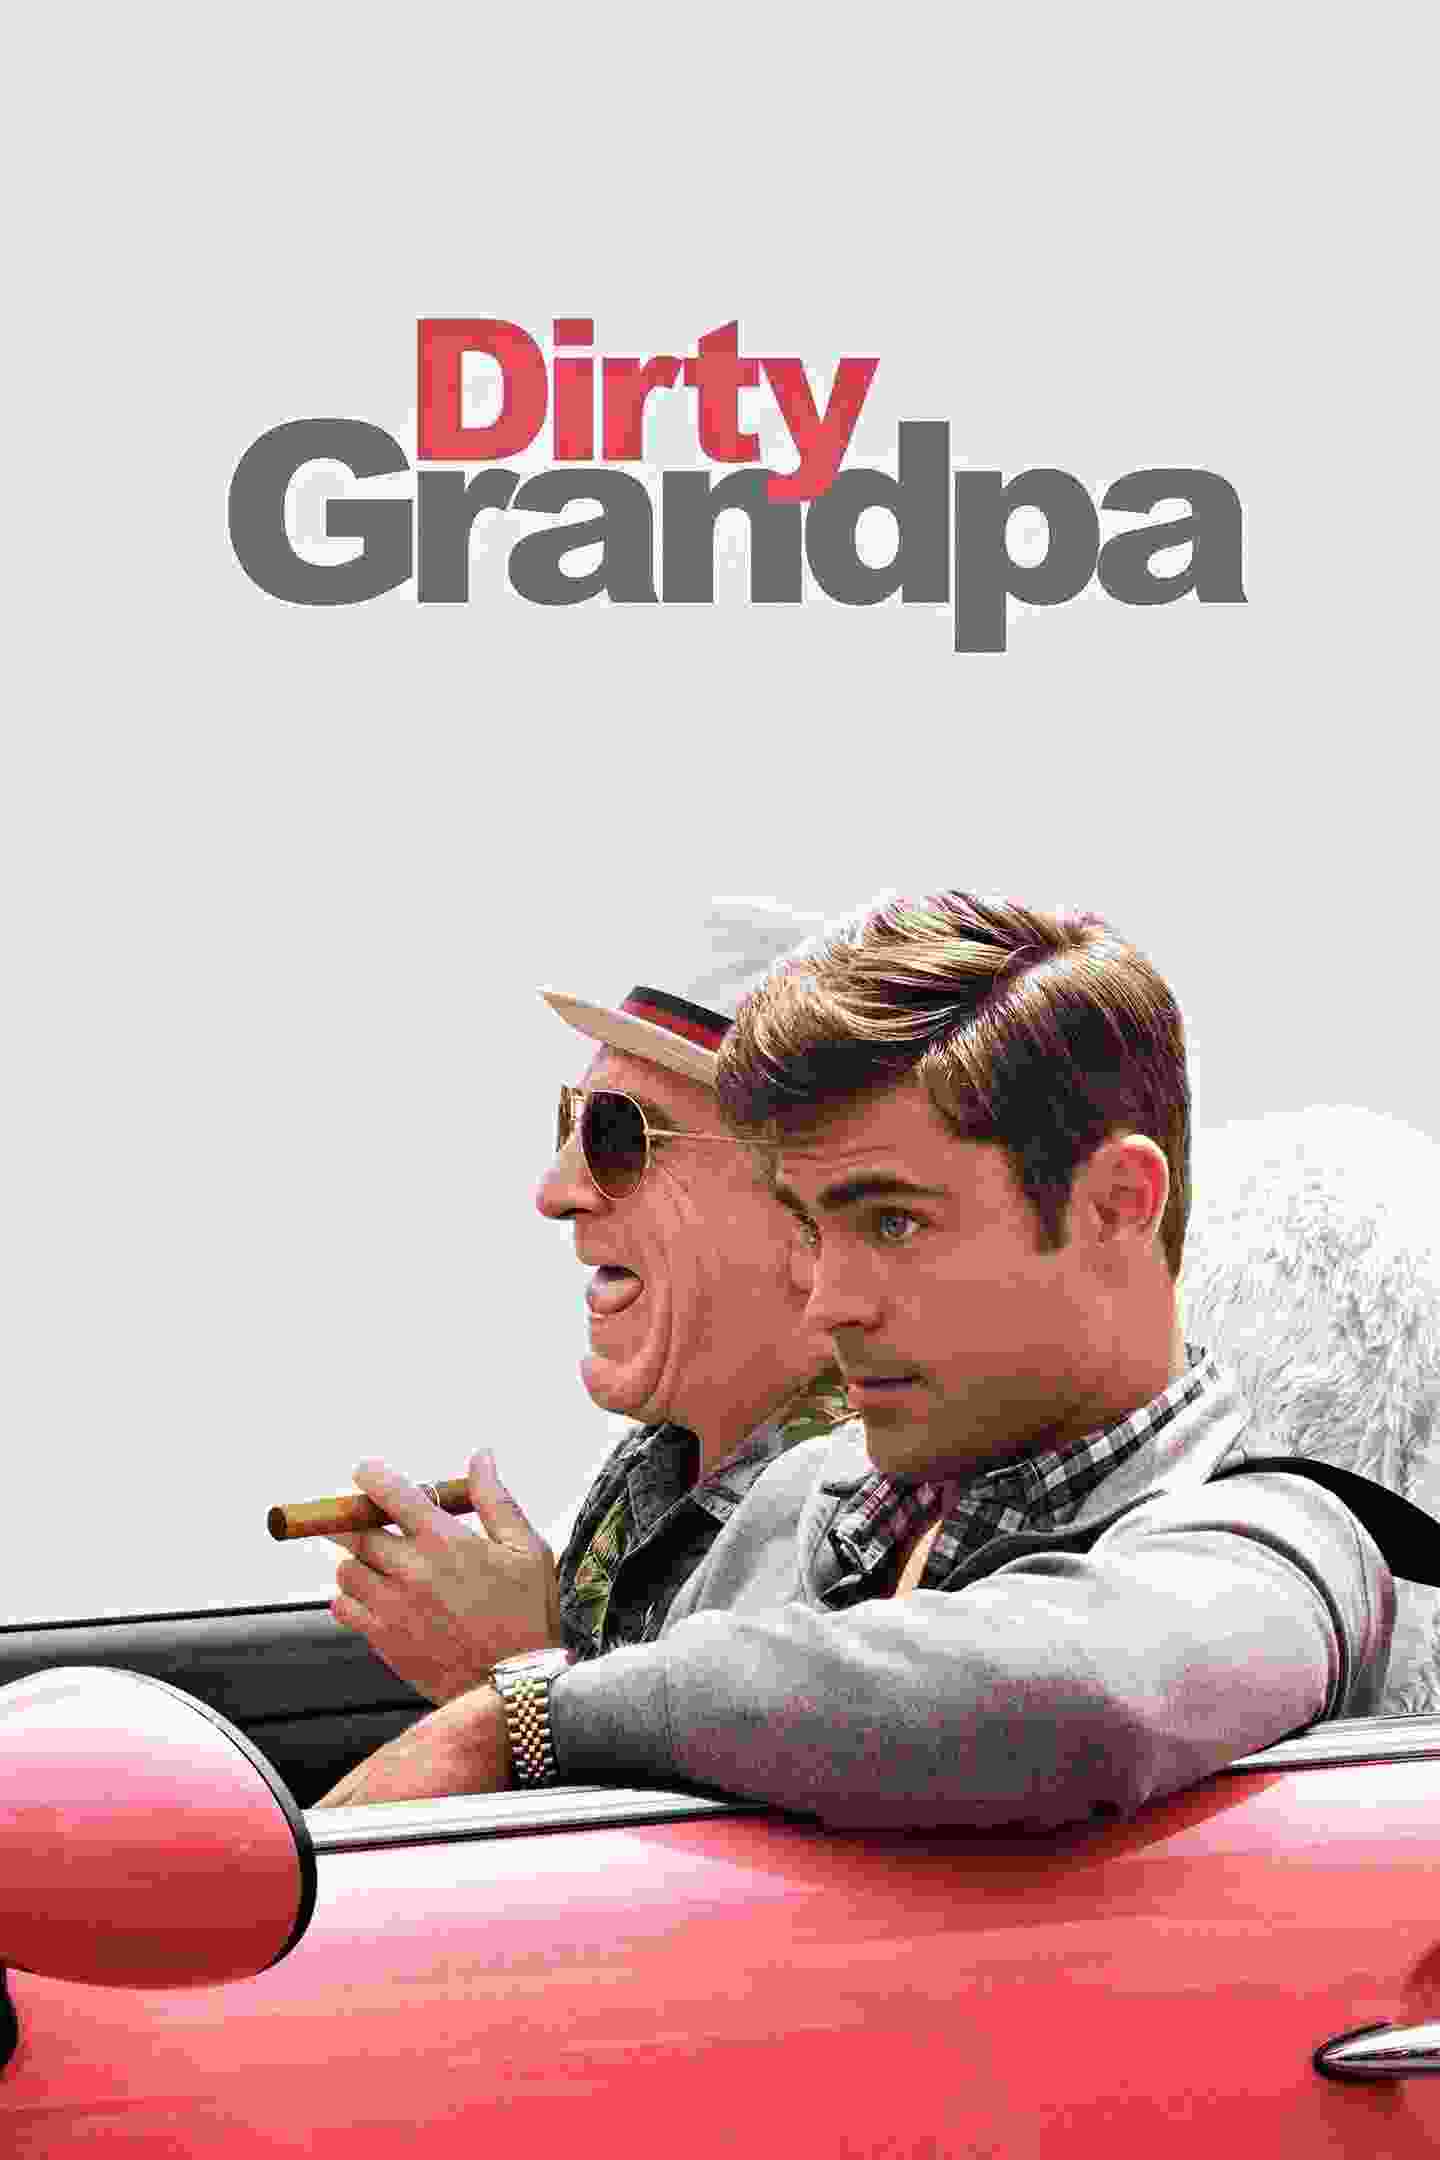 Dirty Grandpa (2016) Robert De Niro